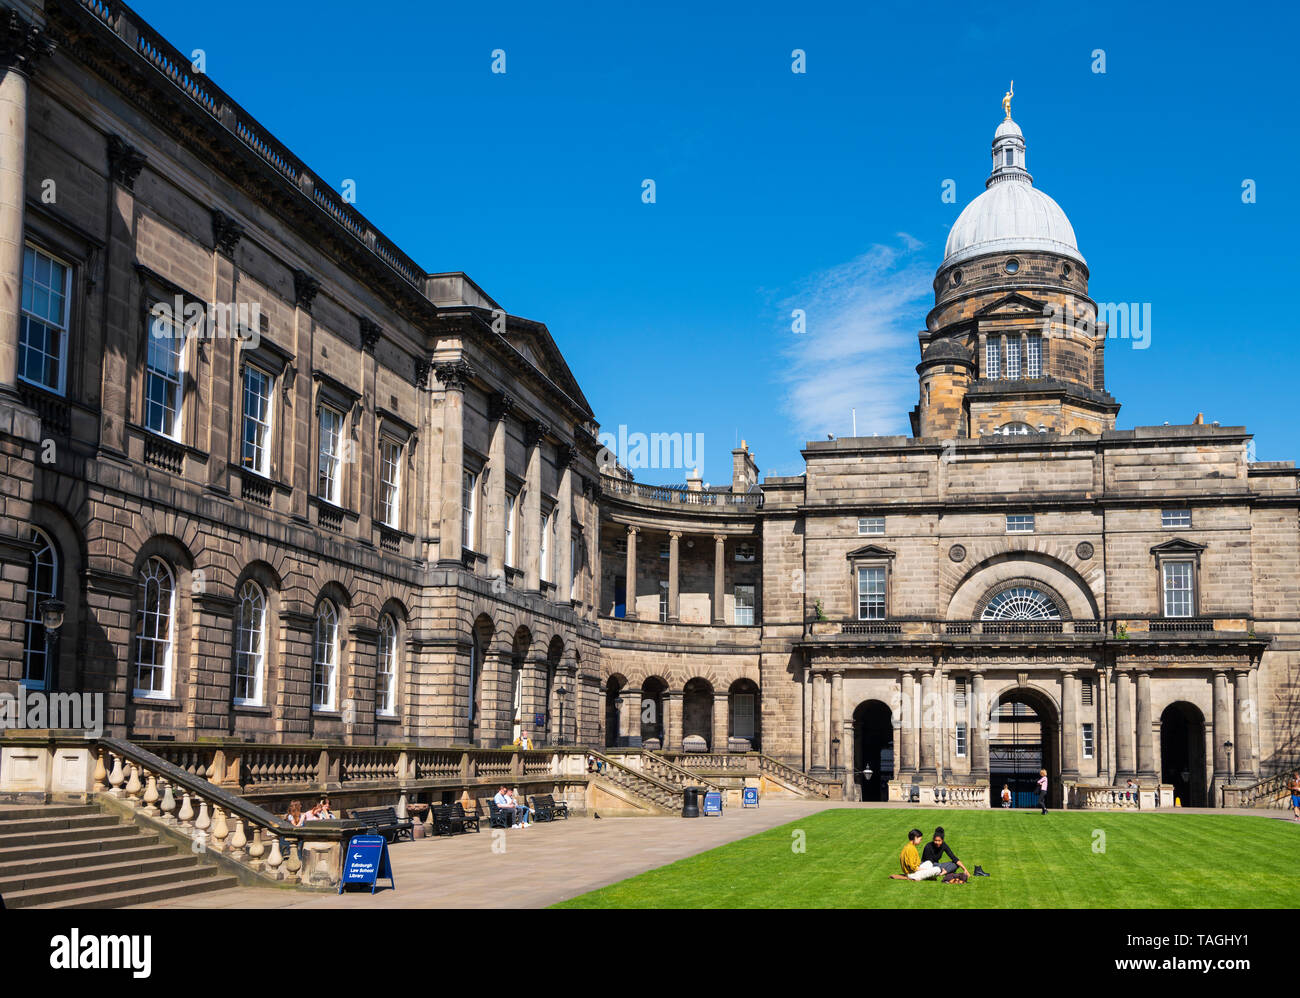 Vue sur la cour à l'ancien collège à l'Université d'Edimbourg, Ecosse, Royaume-Uni Banque D'Images